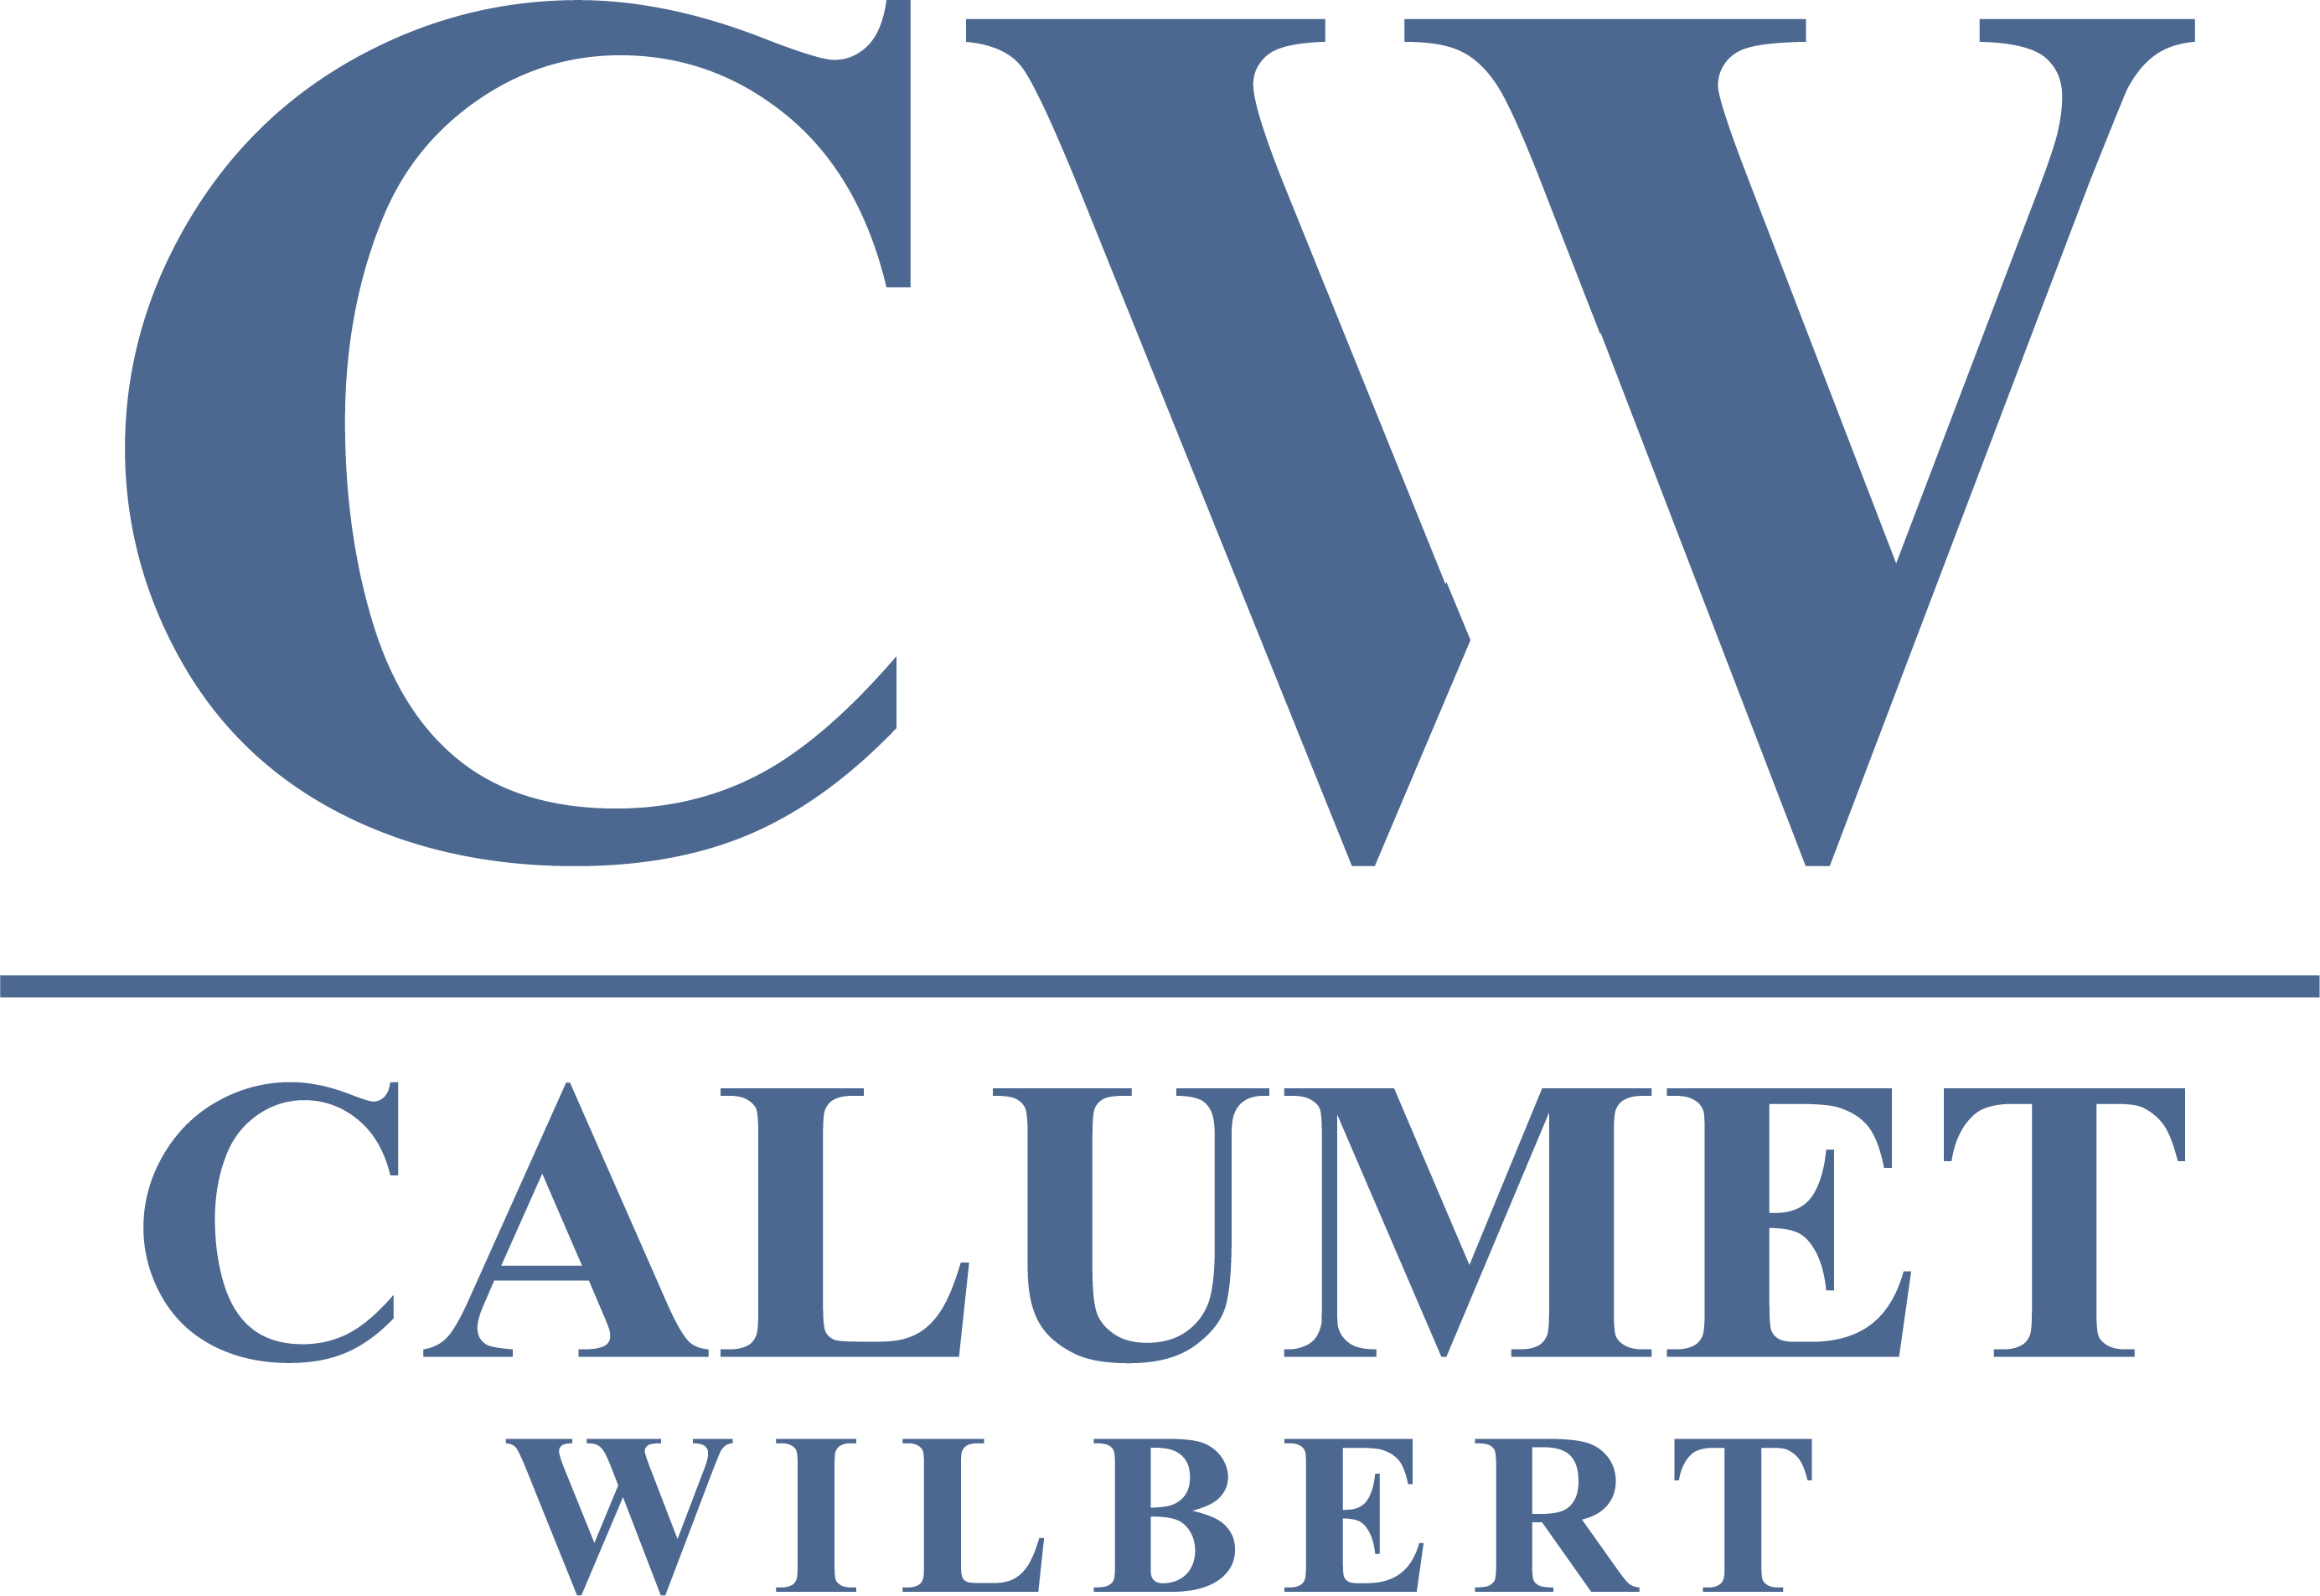 Calumet Wilbert